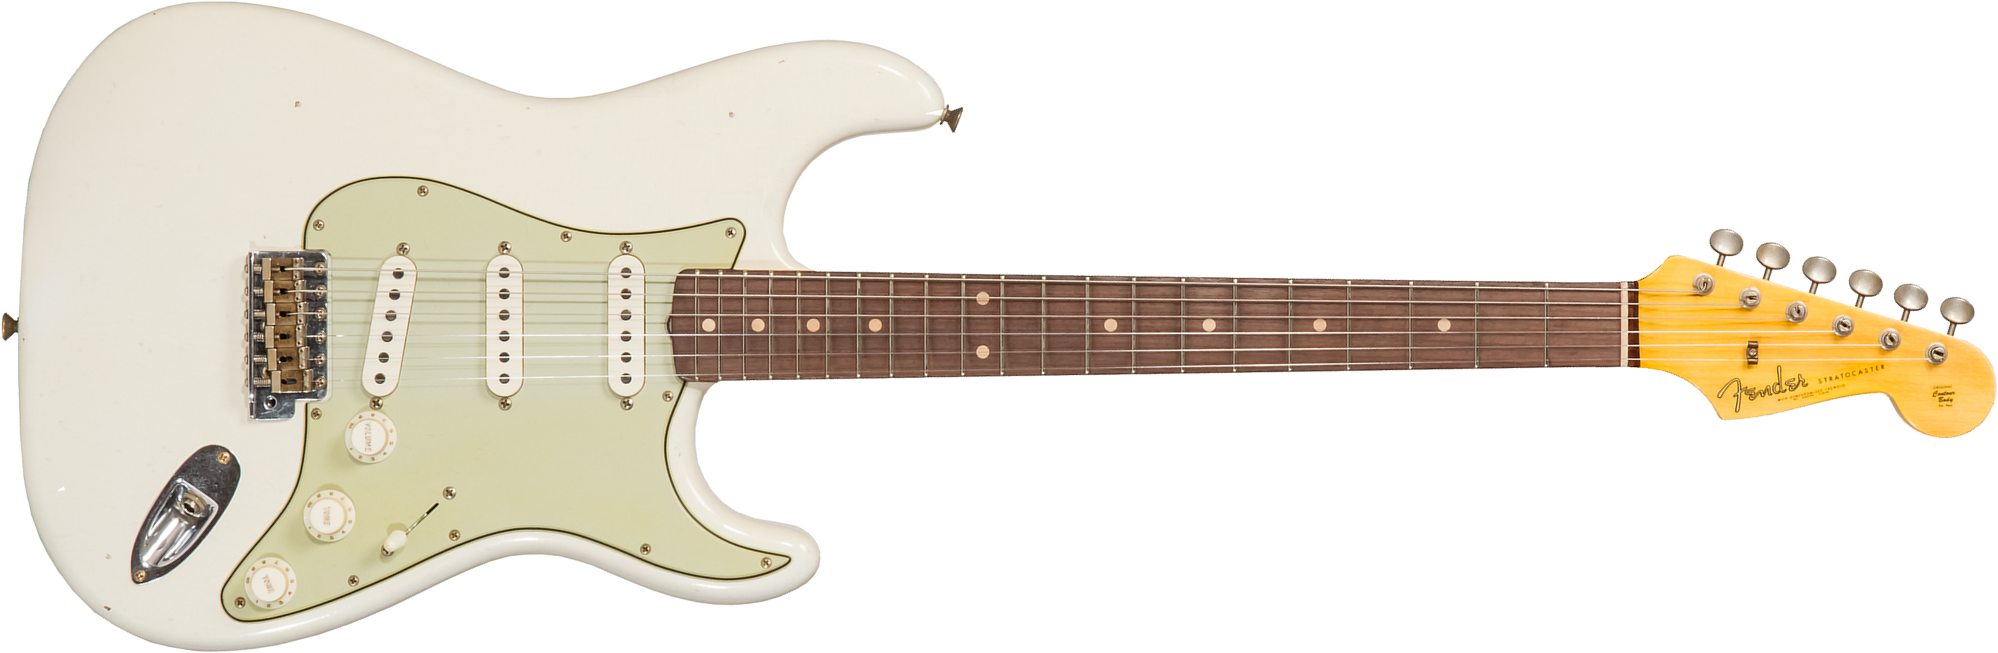 Fender Custom Shop Strat 1962/63 3s Trem Rw #cz565163 - Journeyman Relic Olympic White - Elektrische gitaar in Str-vorm - Main picture